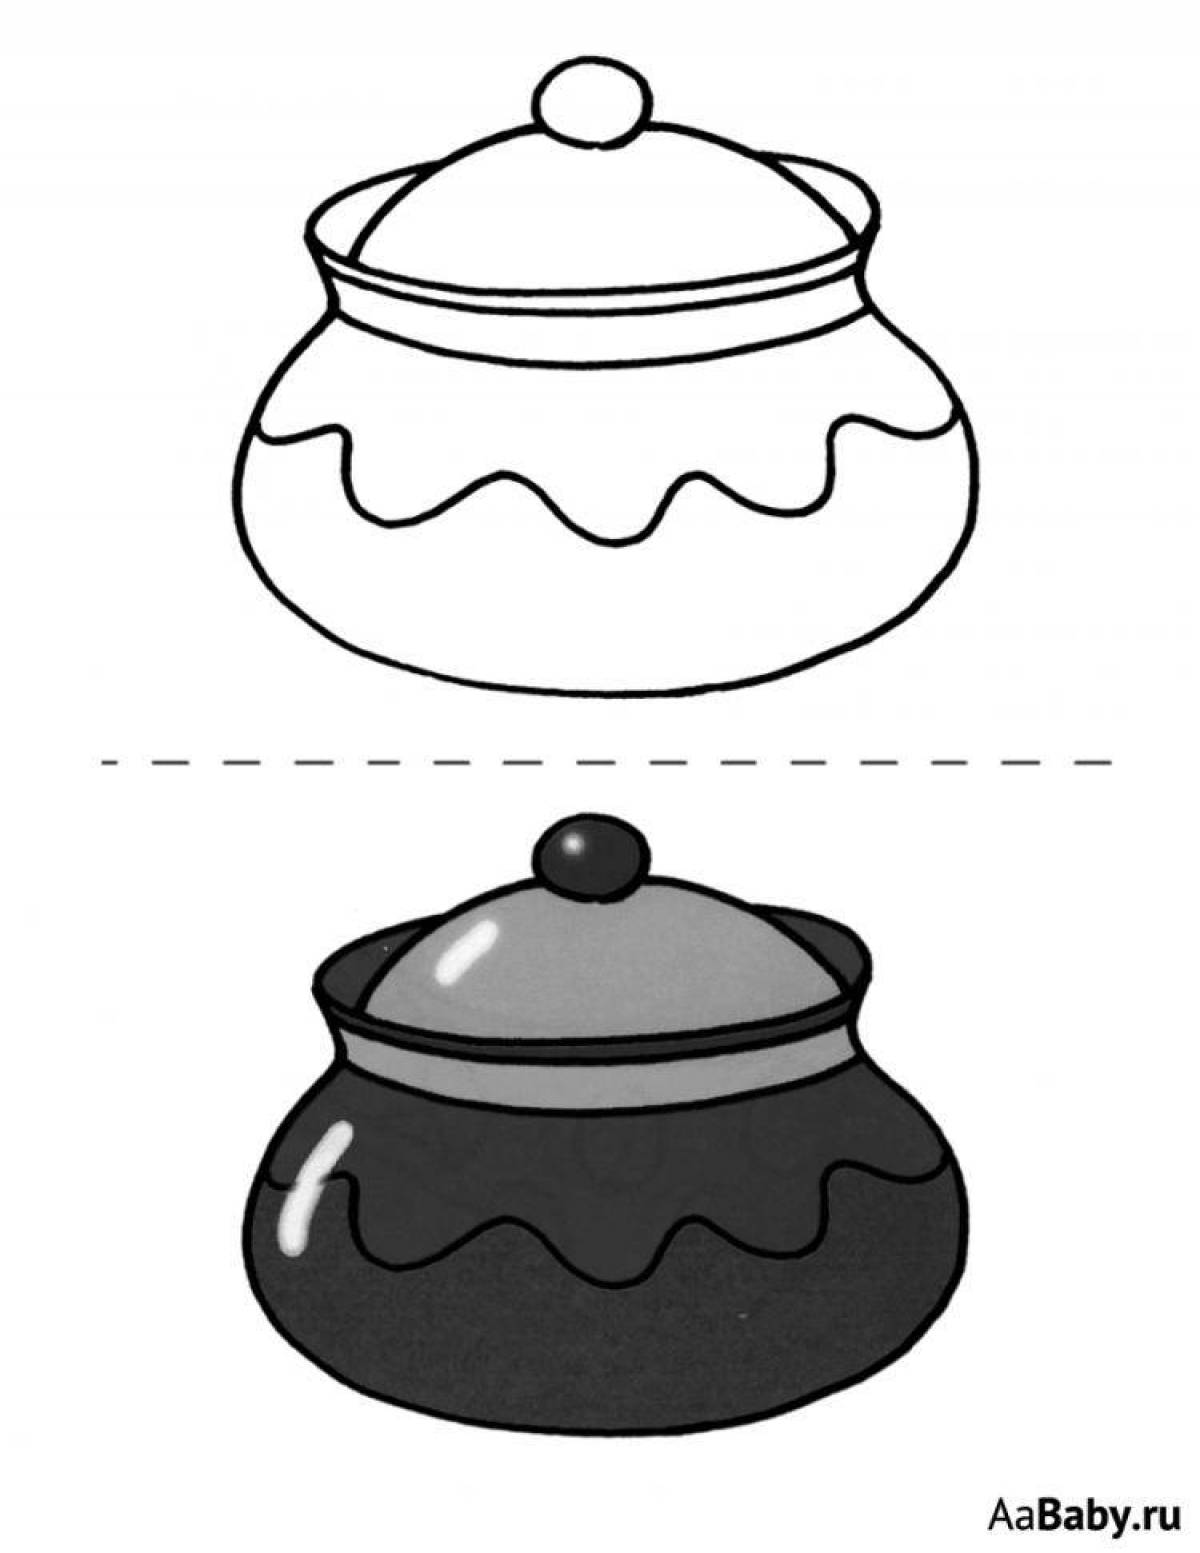 Fancy sugar bowl coloring page